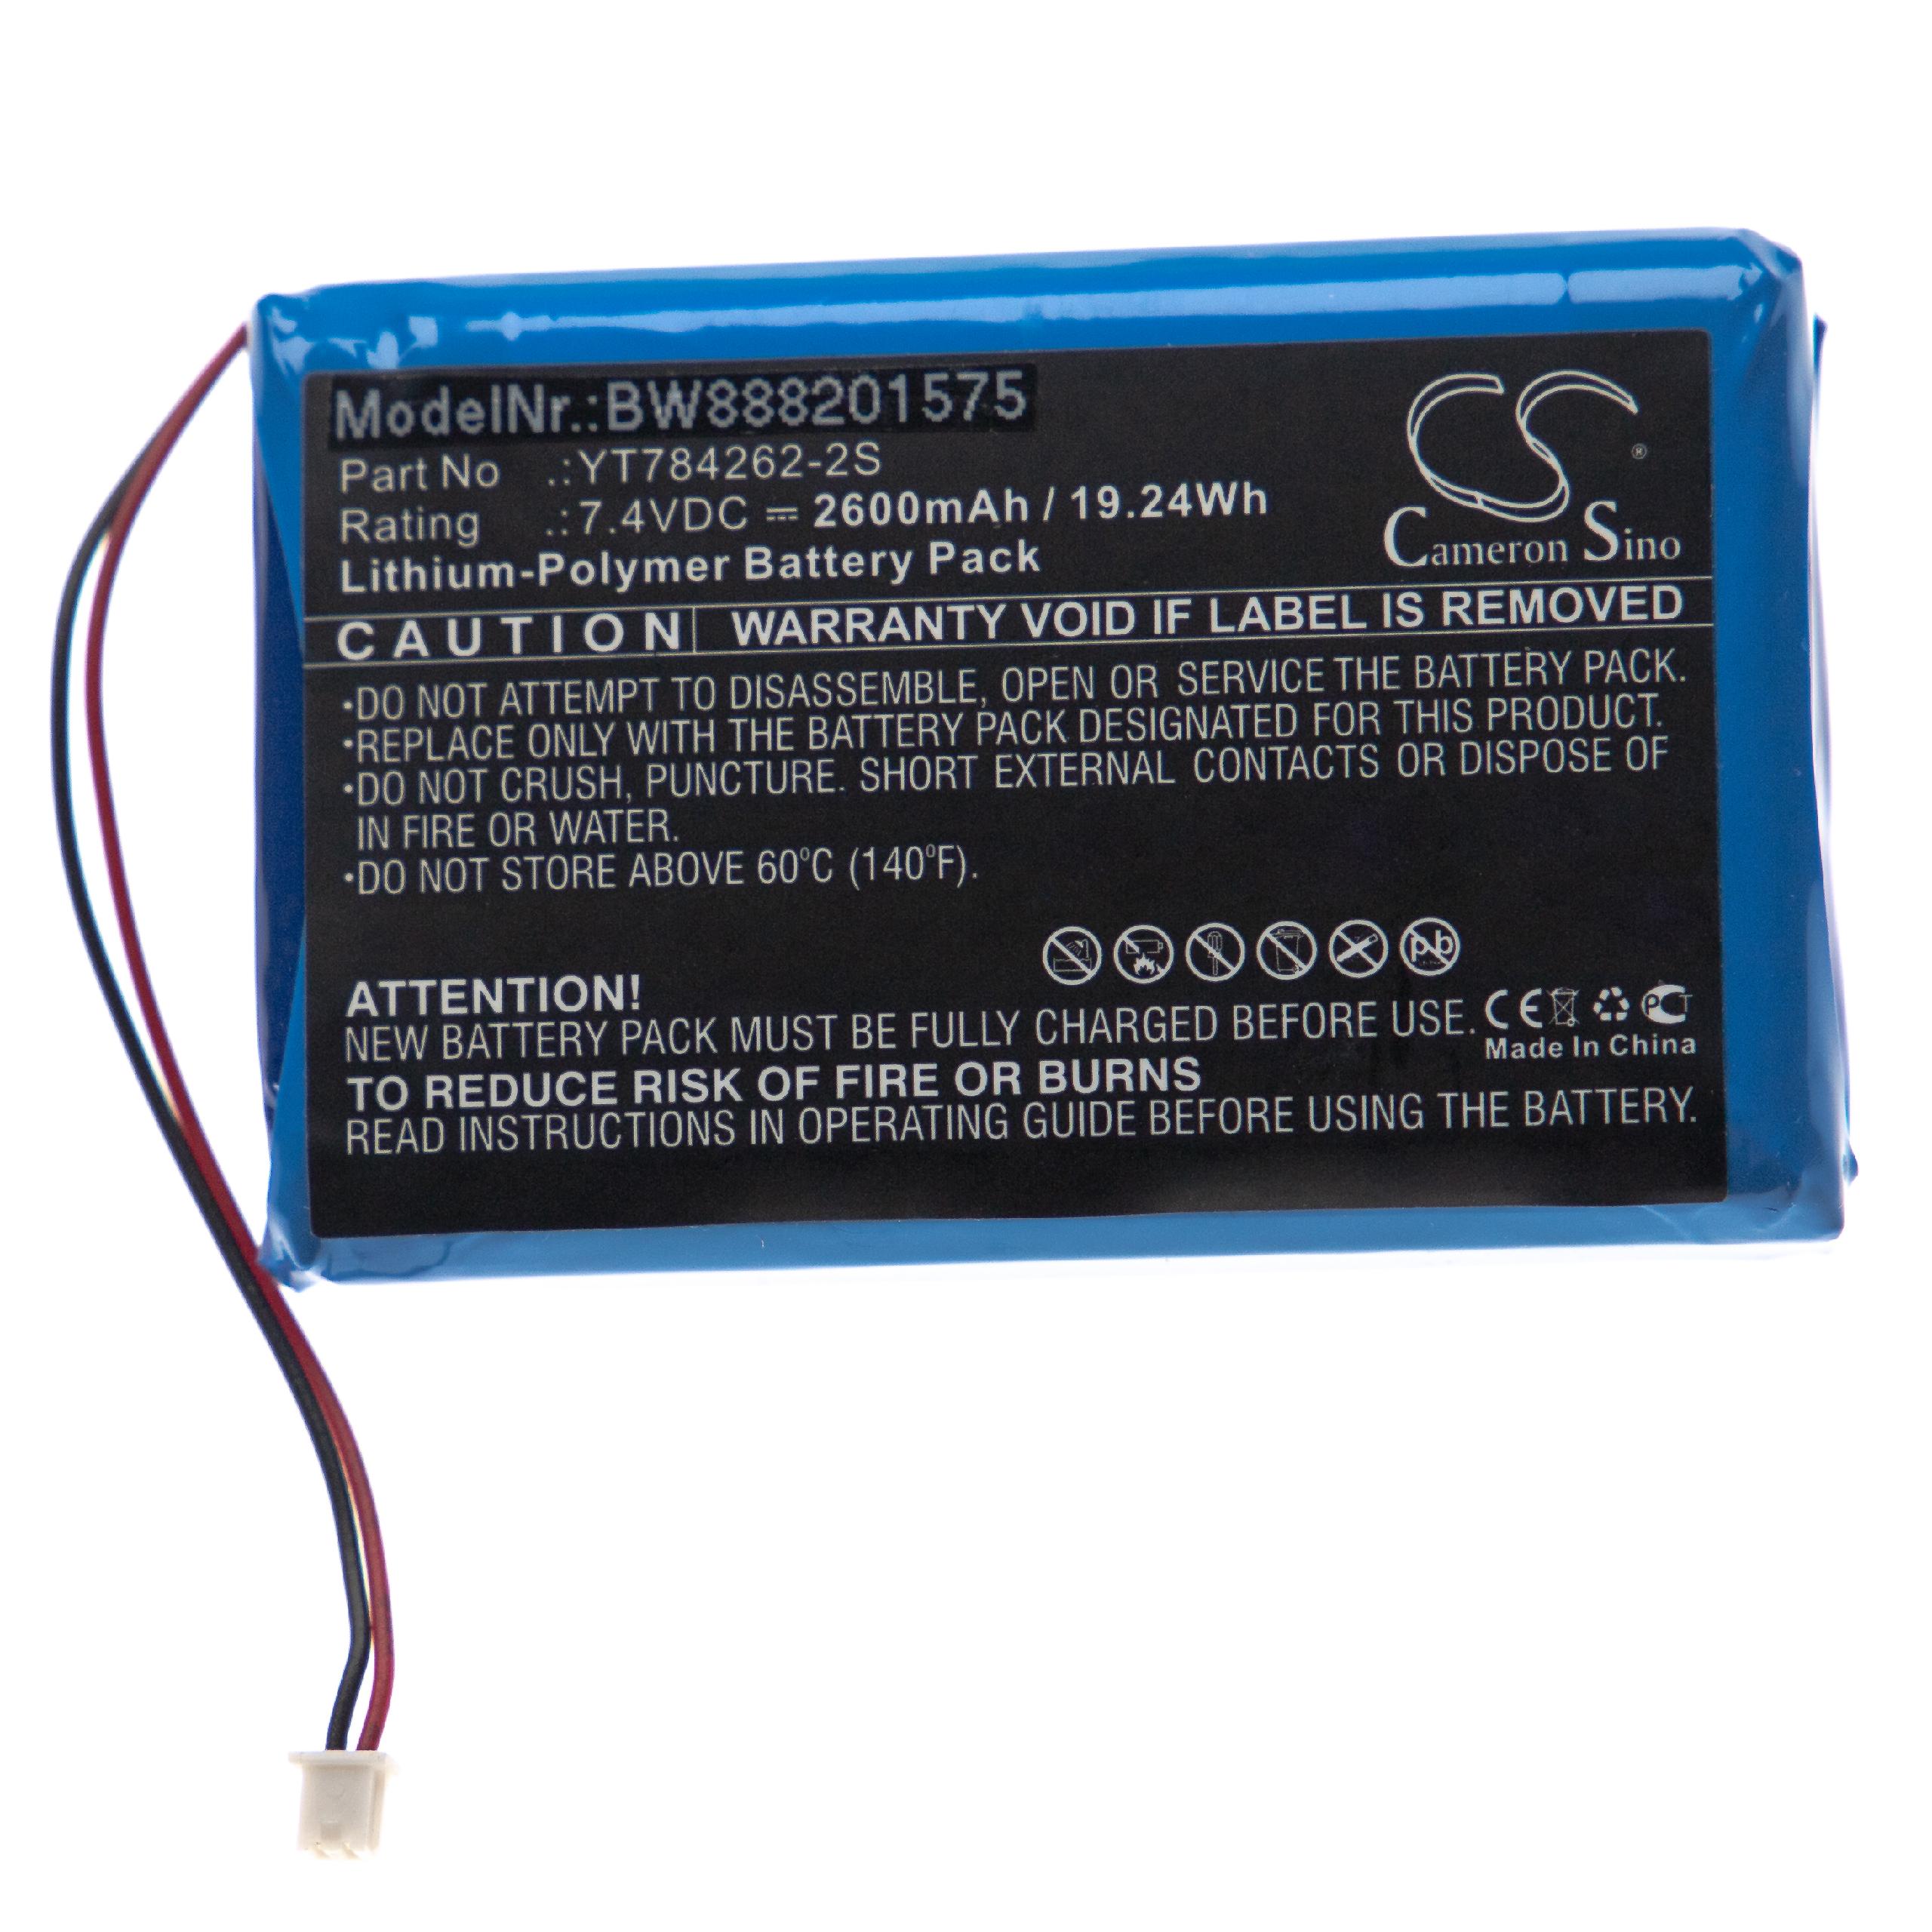 Batterie remplace Uniwell YT784262-2S pour caisse enregistreuse - 2600mAh 7,4V Li-polymère